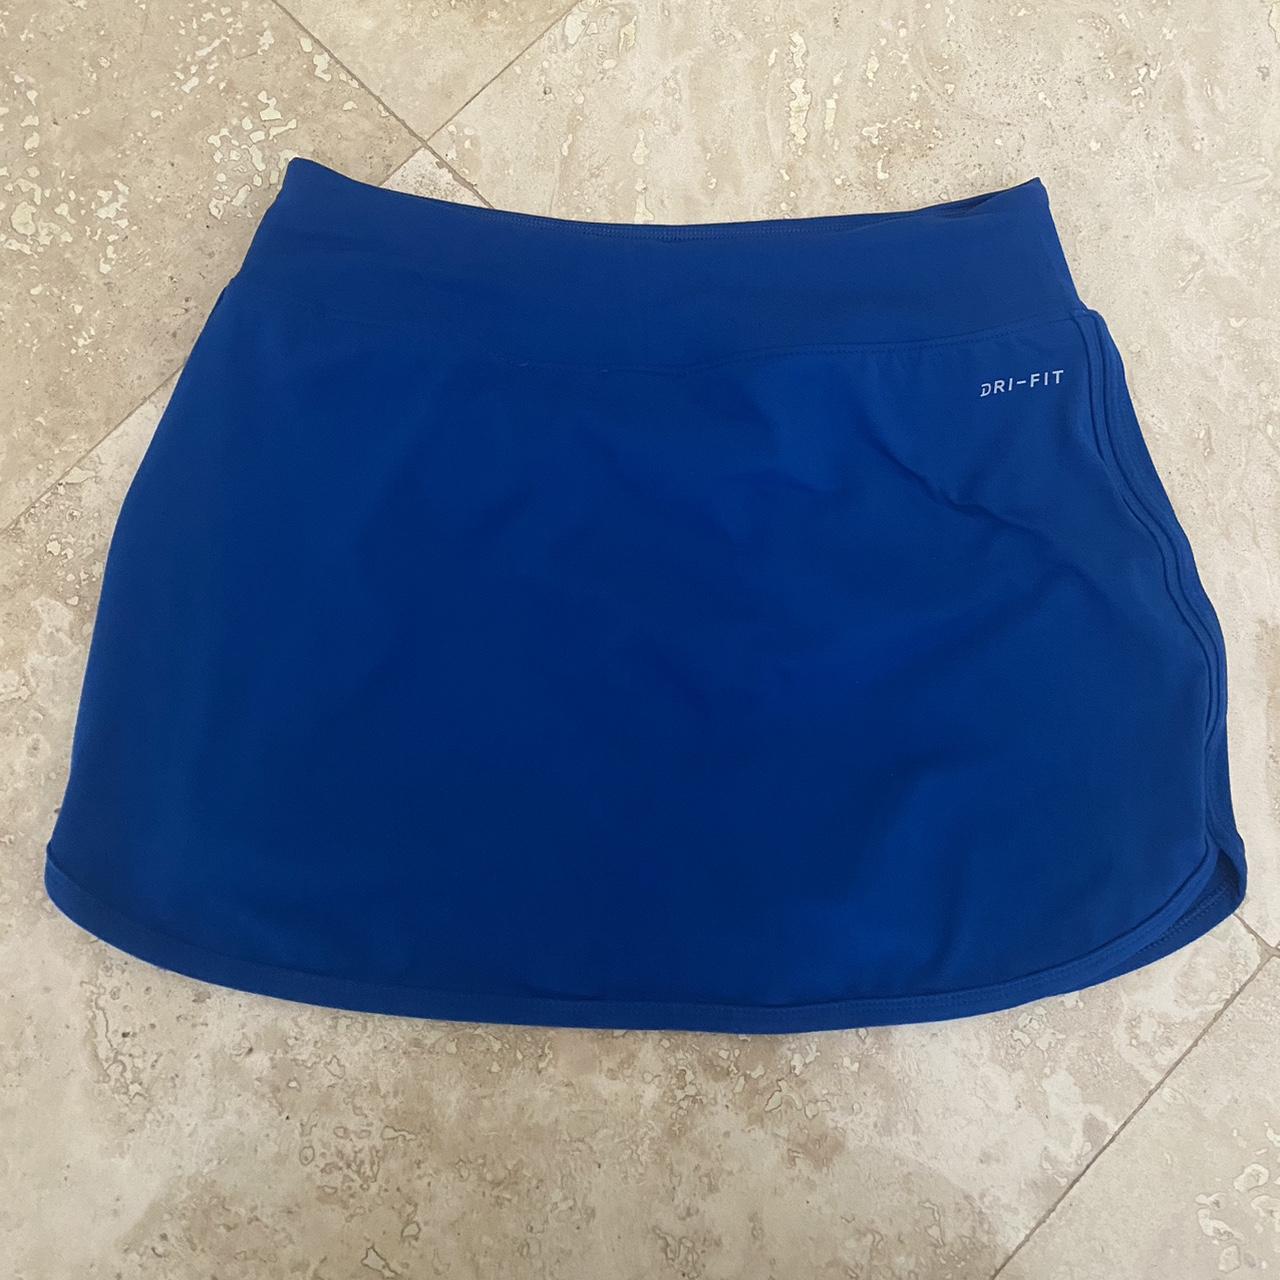 Royal Blue Nike Dri-Fit Mini Tennis Skirt •Cutest... - Depop